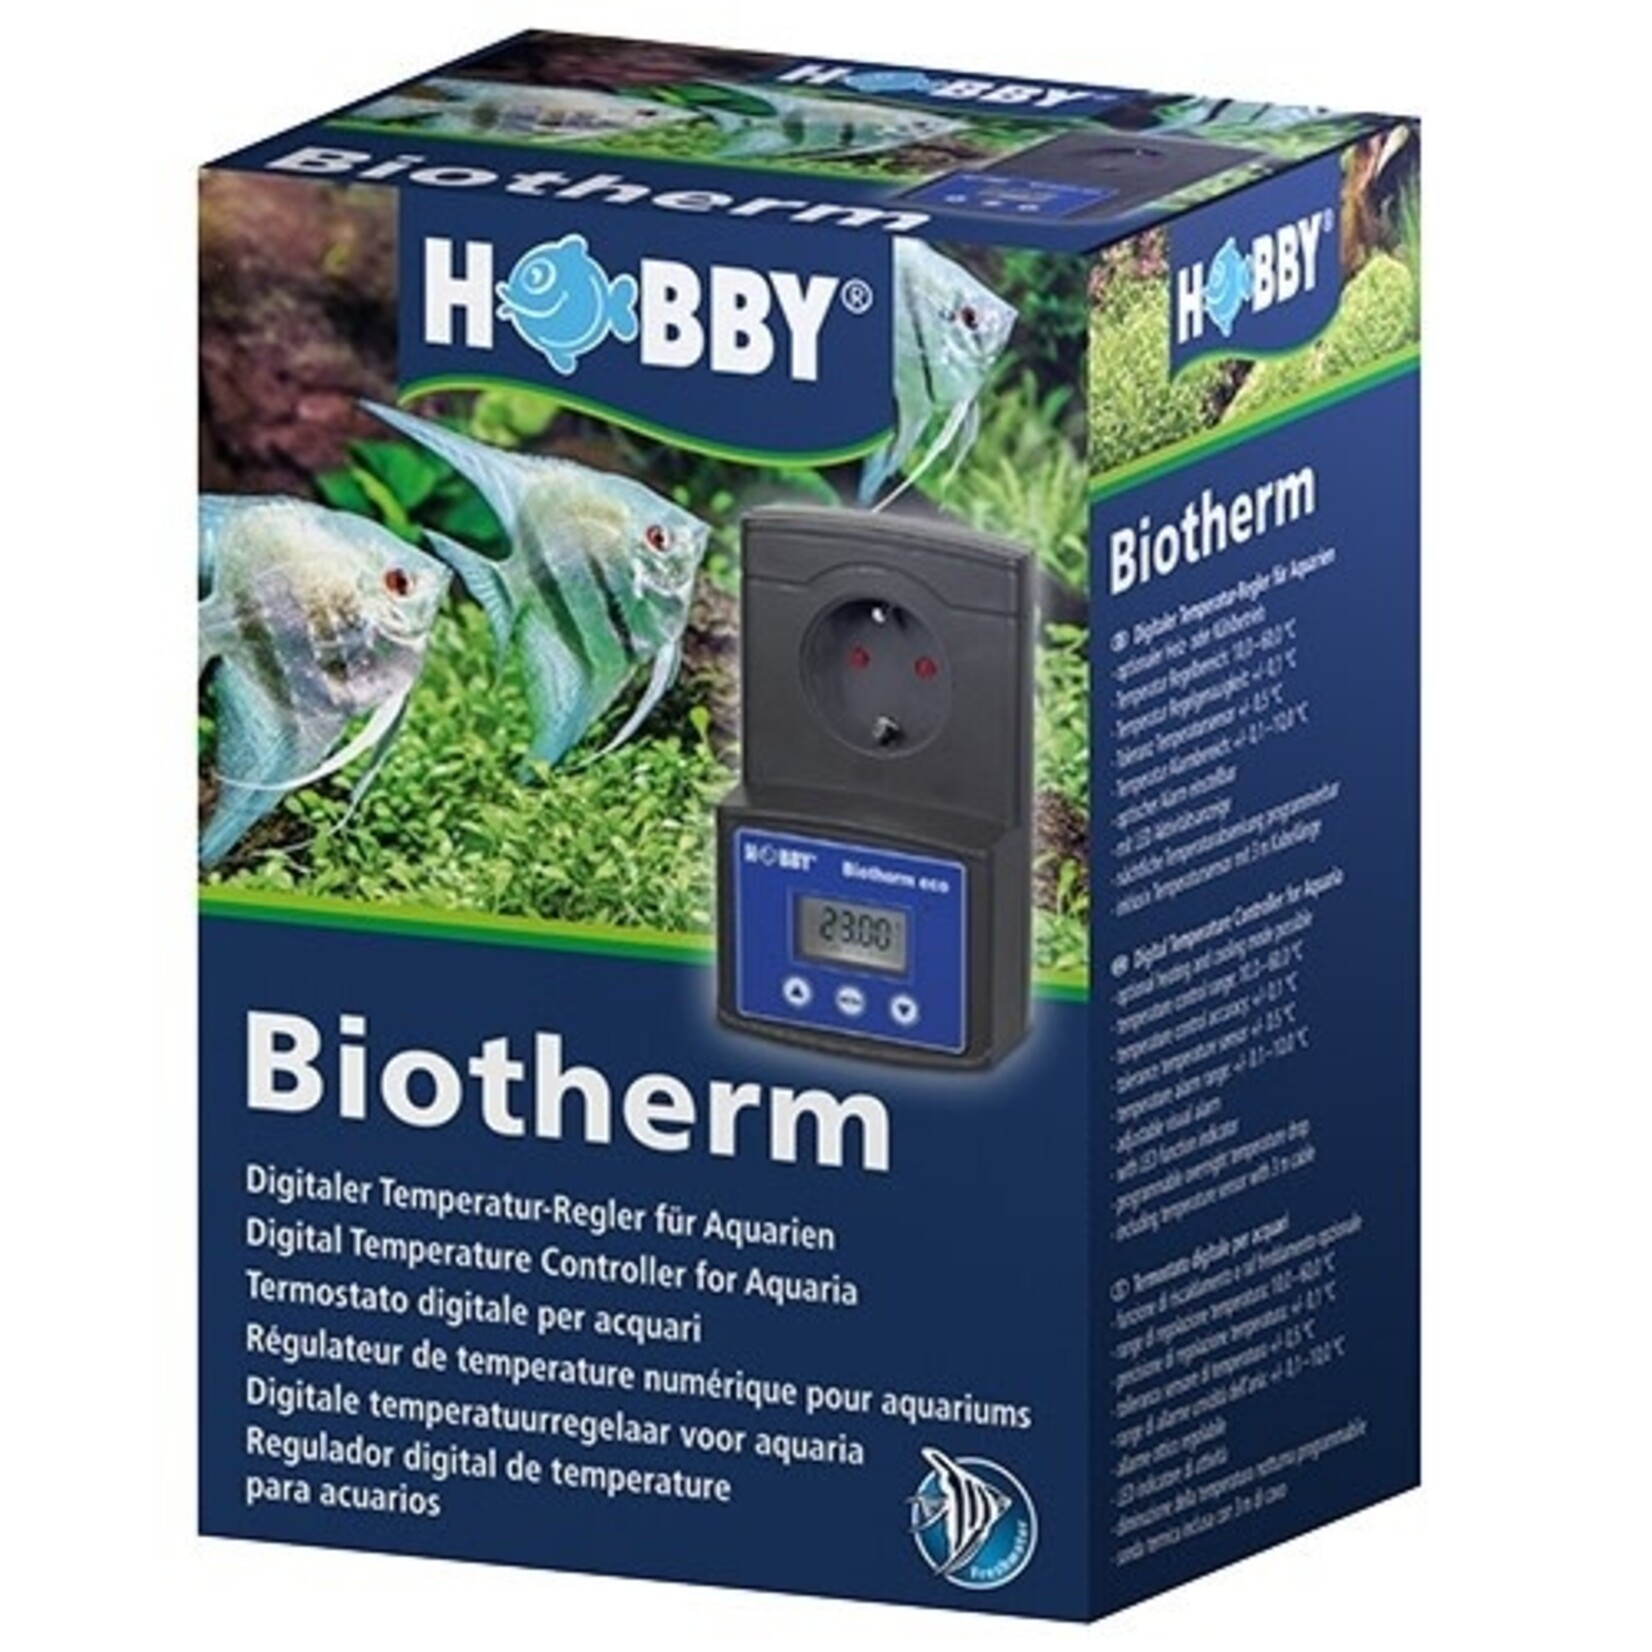 Hobby Biotherm eco temperatuurregelaar